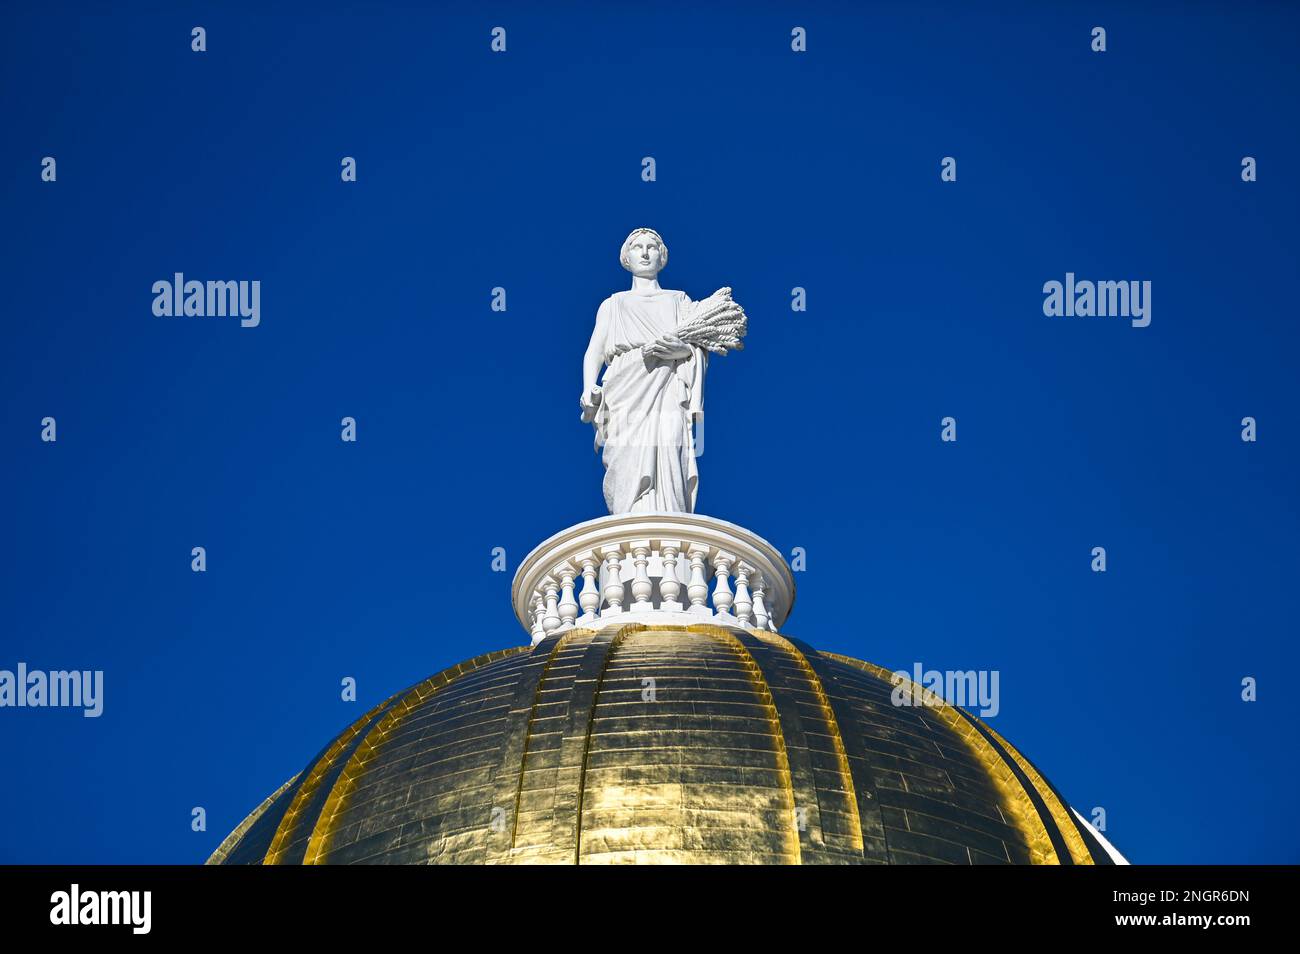 Cérès, déesse romaine de l'agriculture, au sommet du dôme doré de la maison d'État du Vermont, Montpelier, Vermont, États-Unis, Nouvelle-Angleterre. Banque D'Images